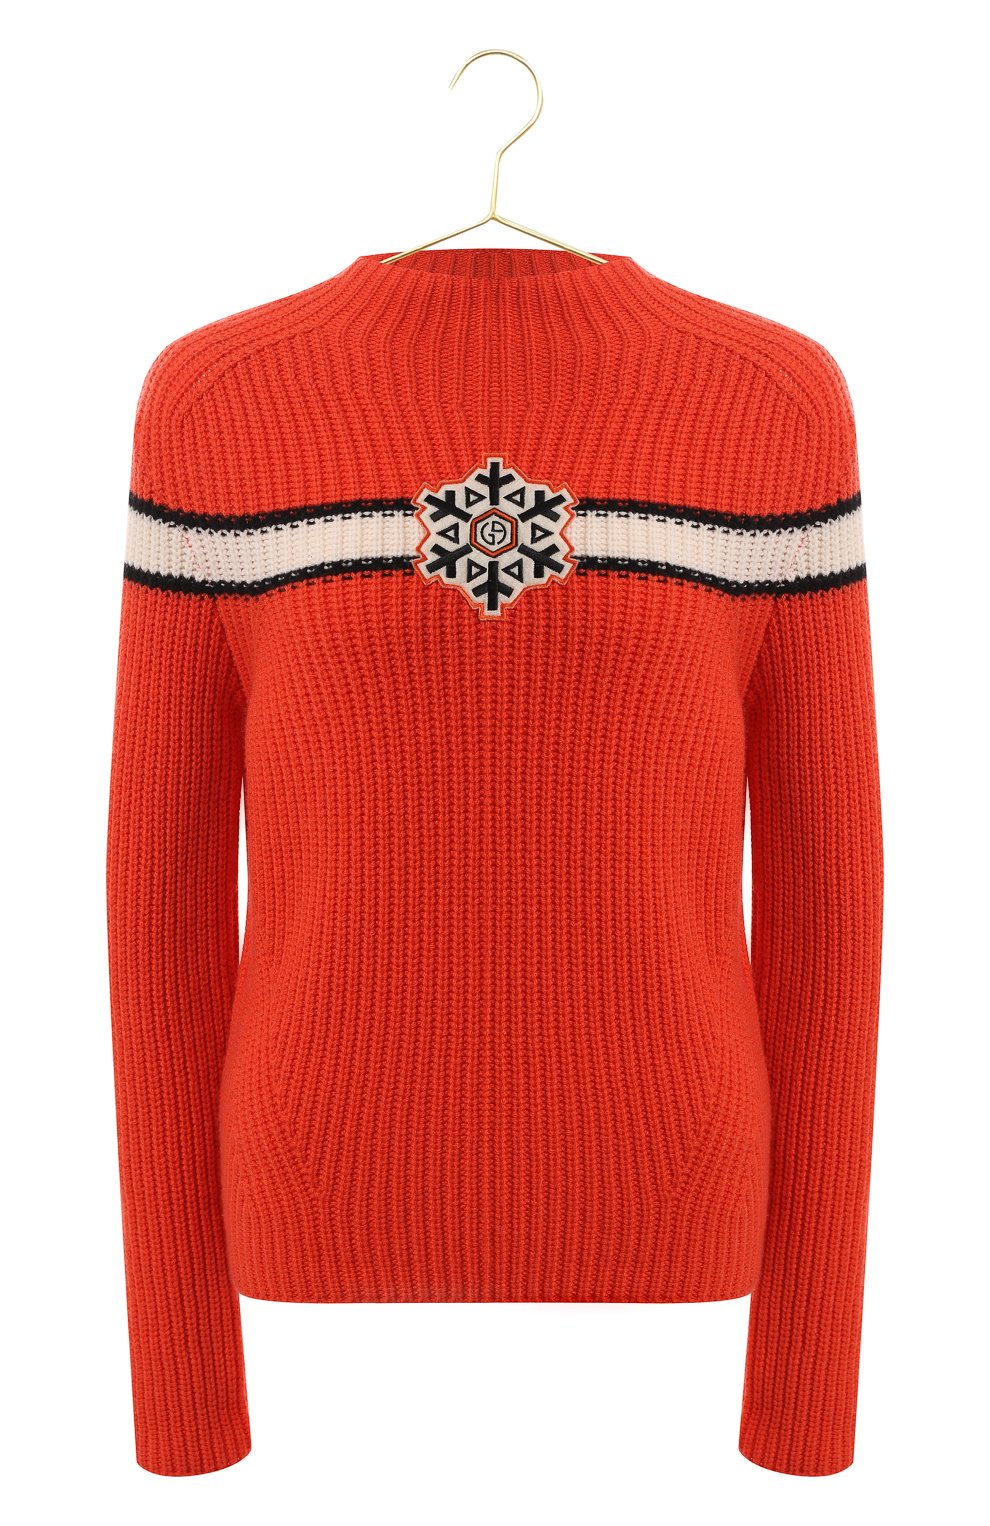 Кашемировый свитер | Giorgio Armani | Оранжевый - 1